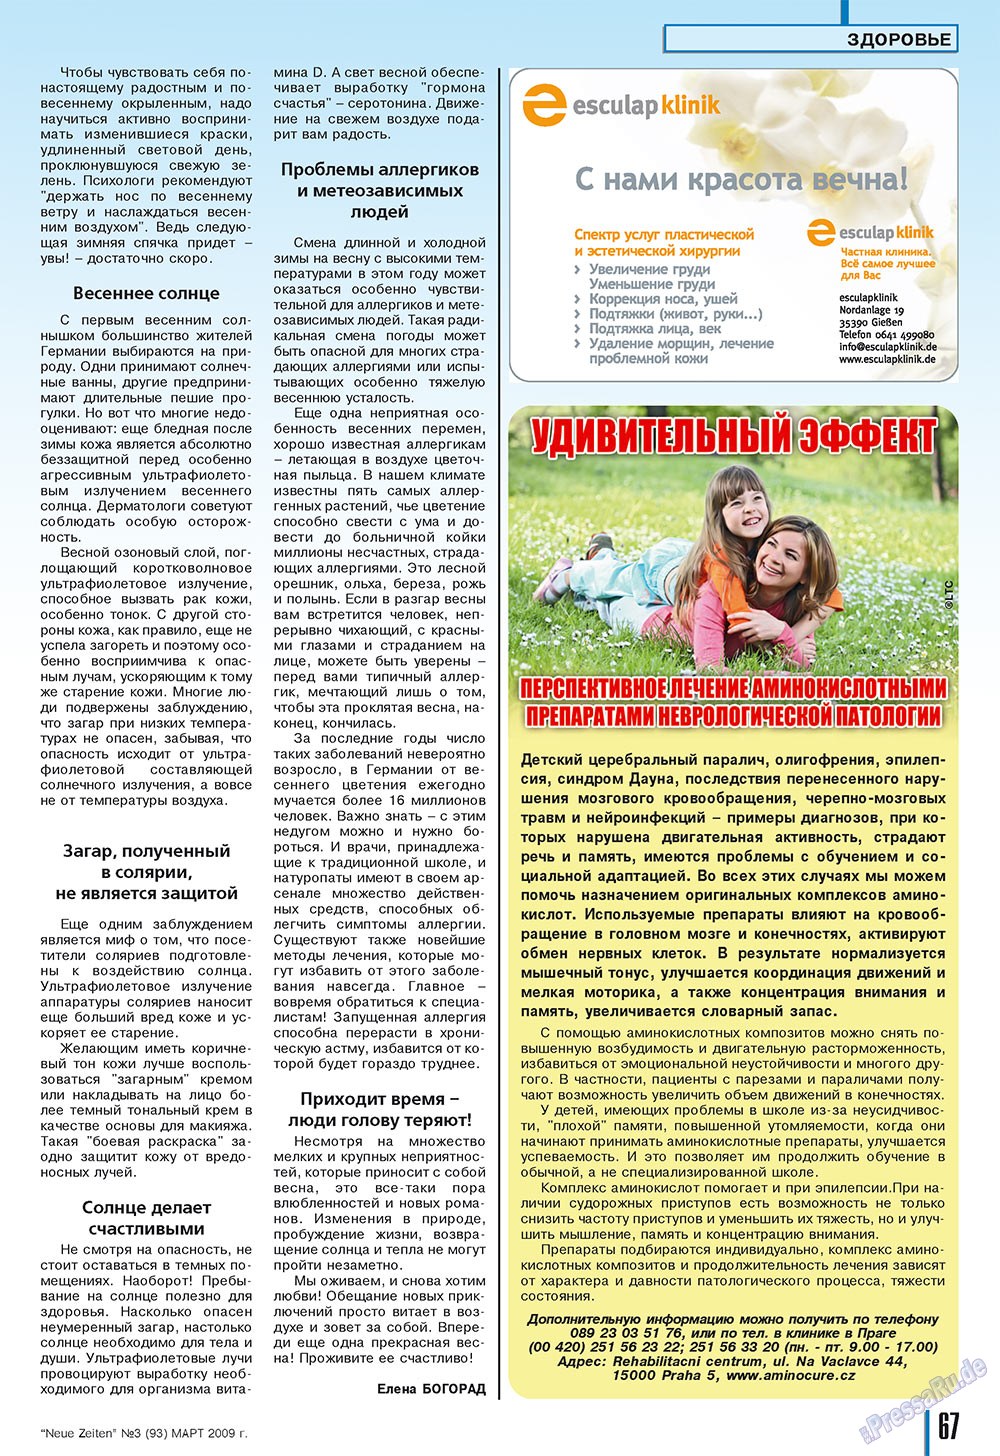 Neue Zeiten, журнал. 2009 №3 стр.67